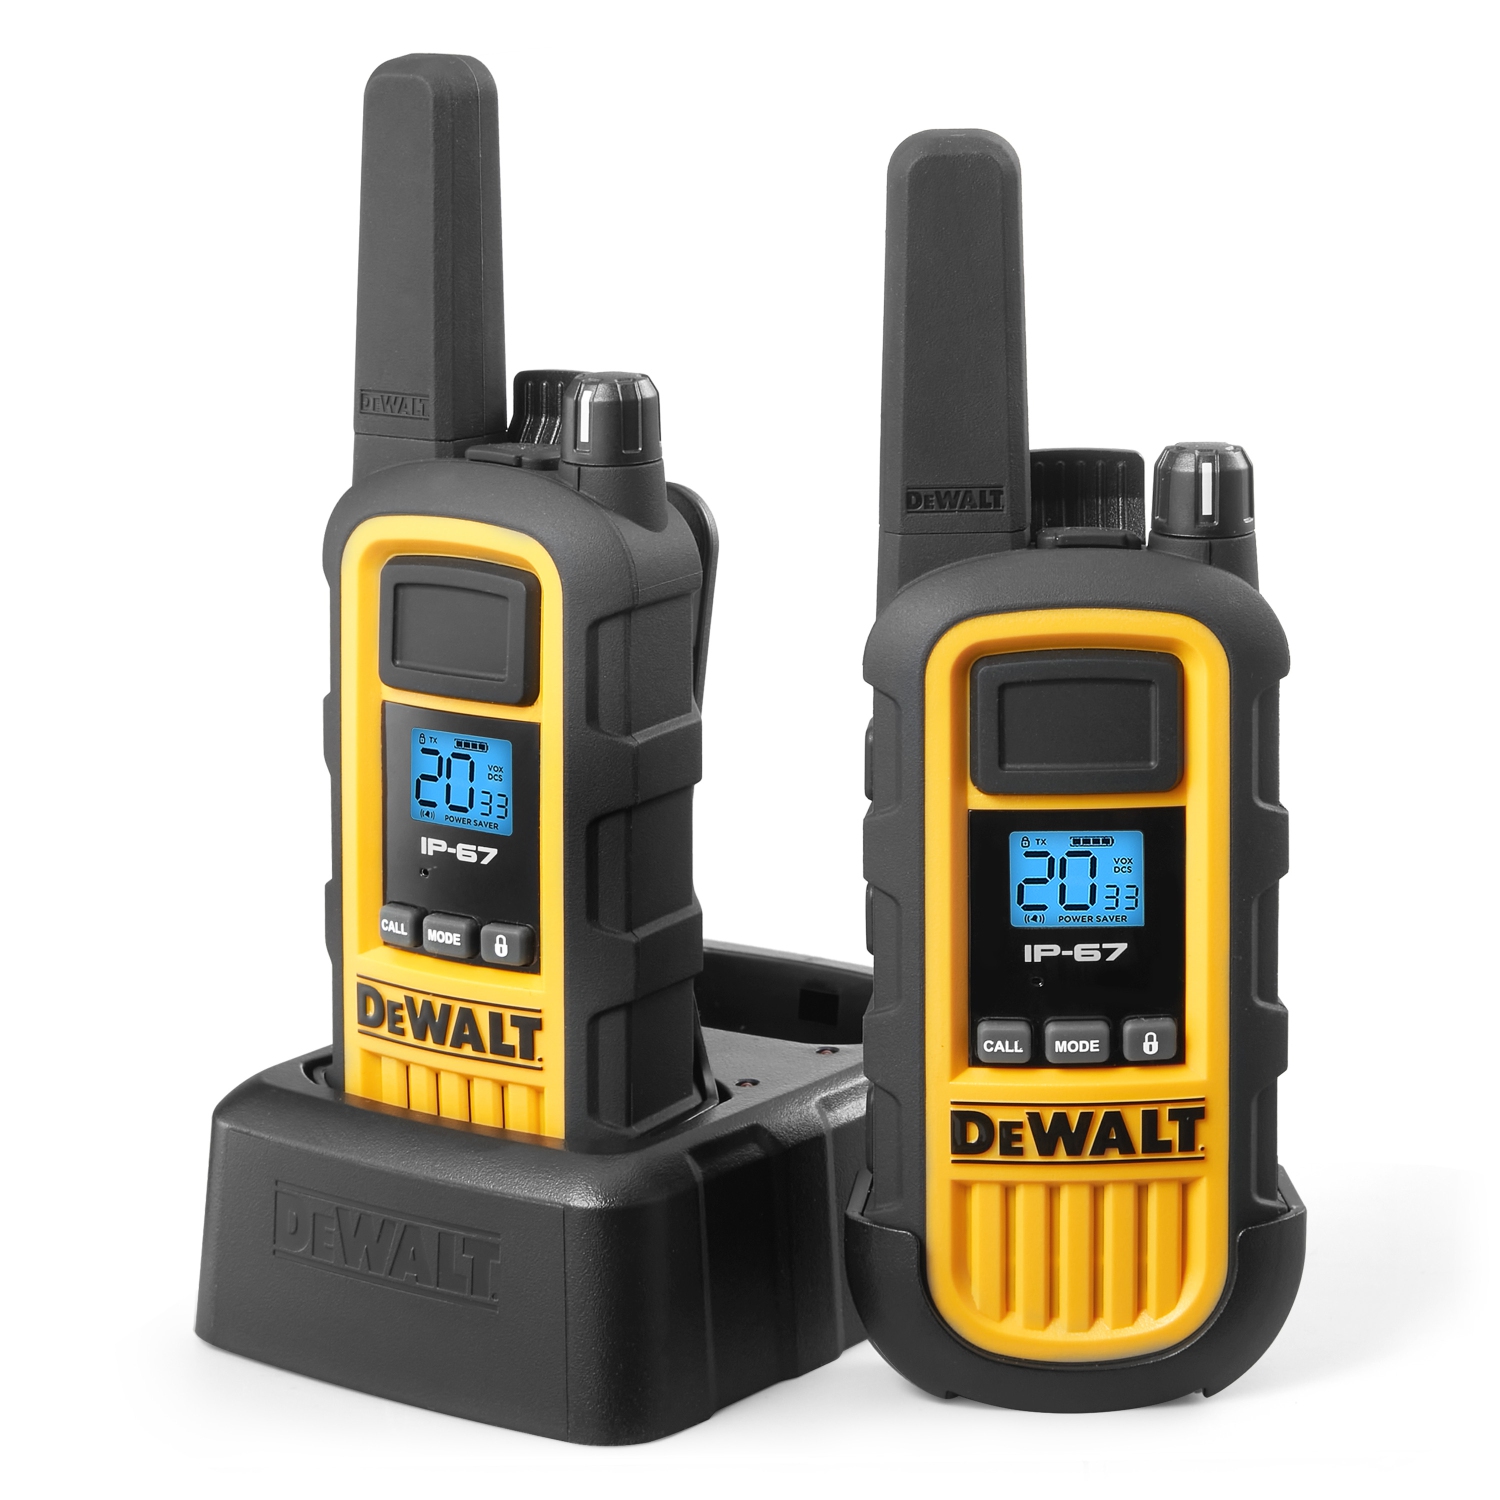 2 DEWALT DXFRS800 Walkie Talkies - 2 Watt, Heavy Duty, Waterproof, Shock Resistant, Long Range & Rechargeable Two Way Radio with VOX, 2 Pack of Radios (7084946)